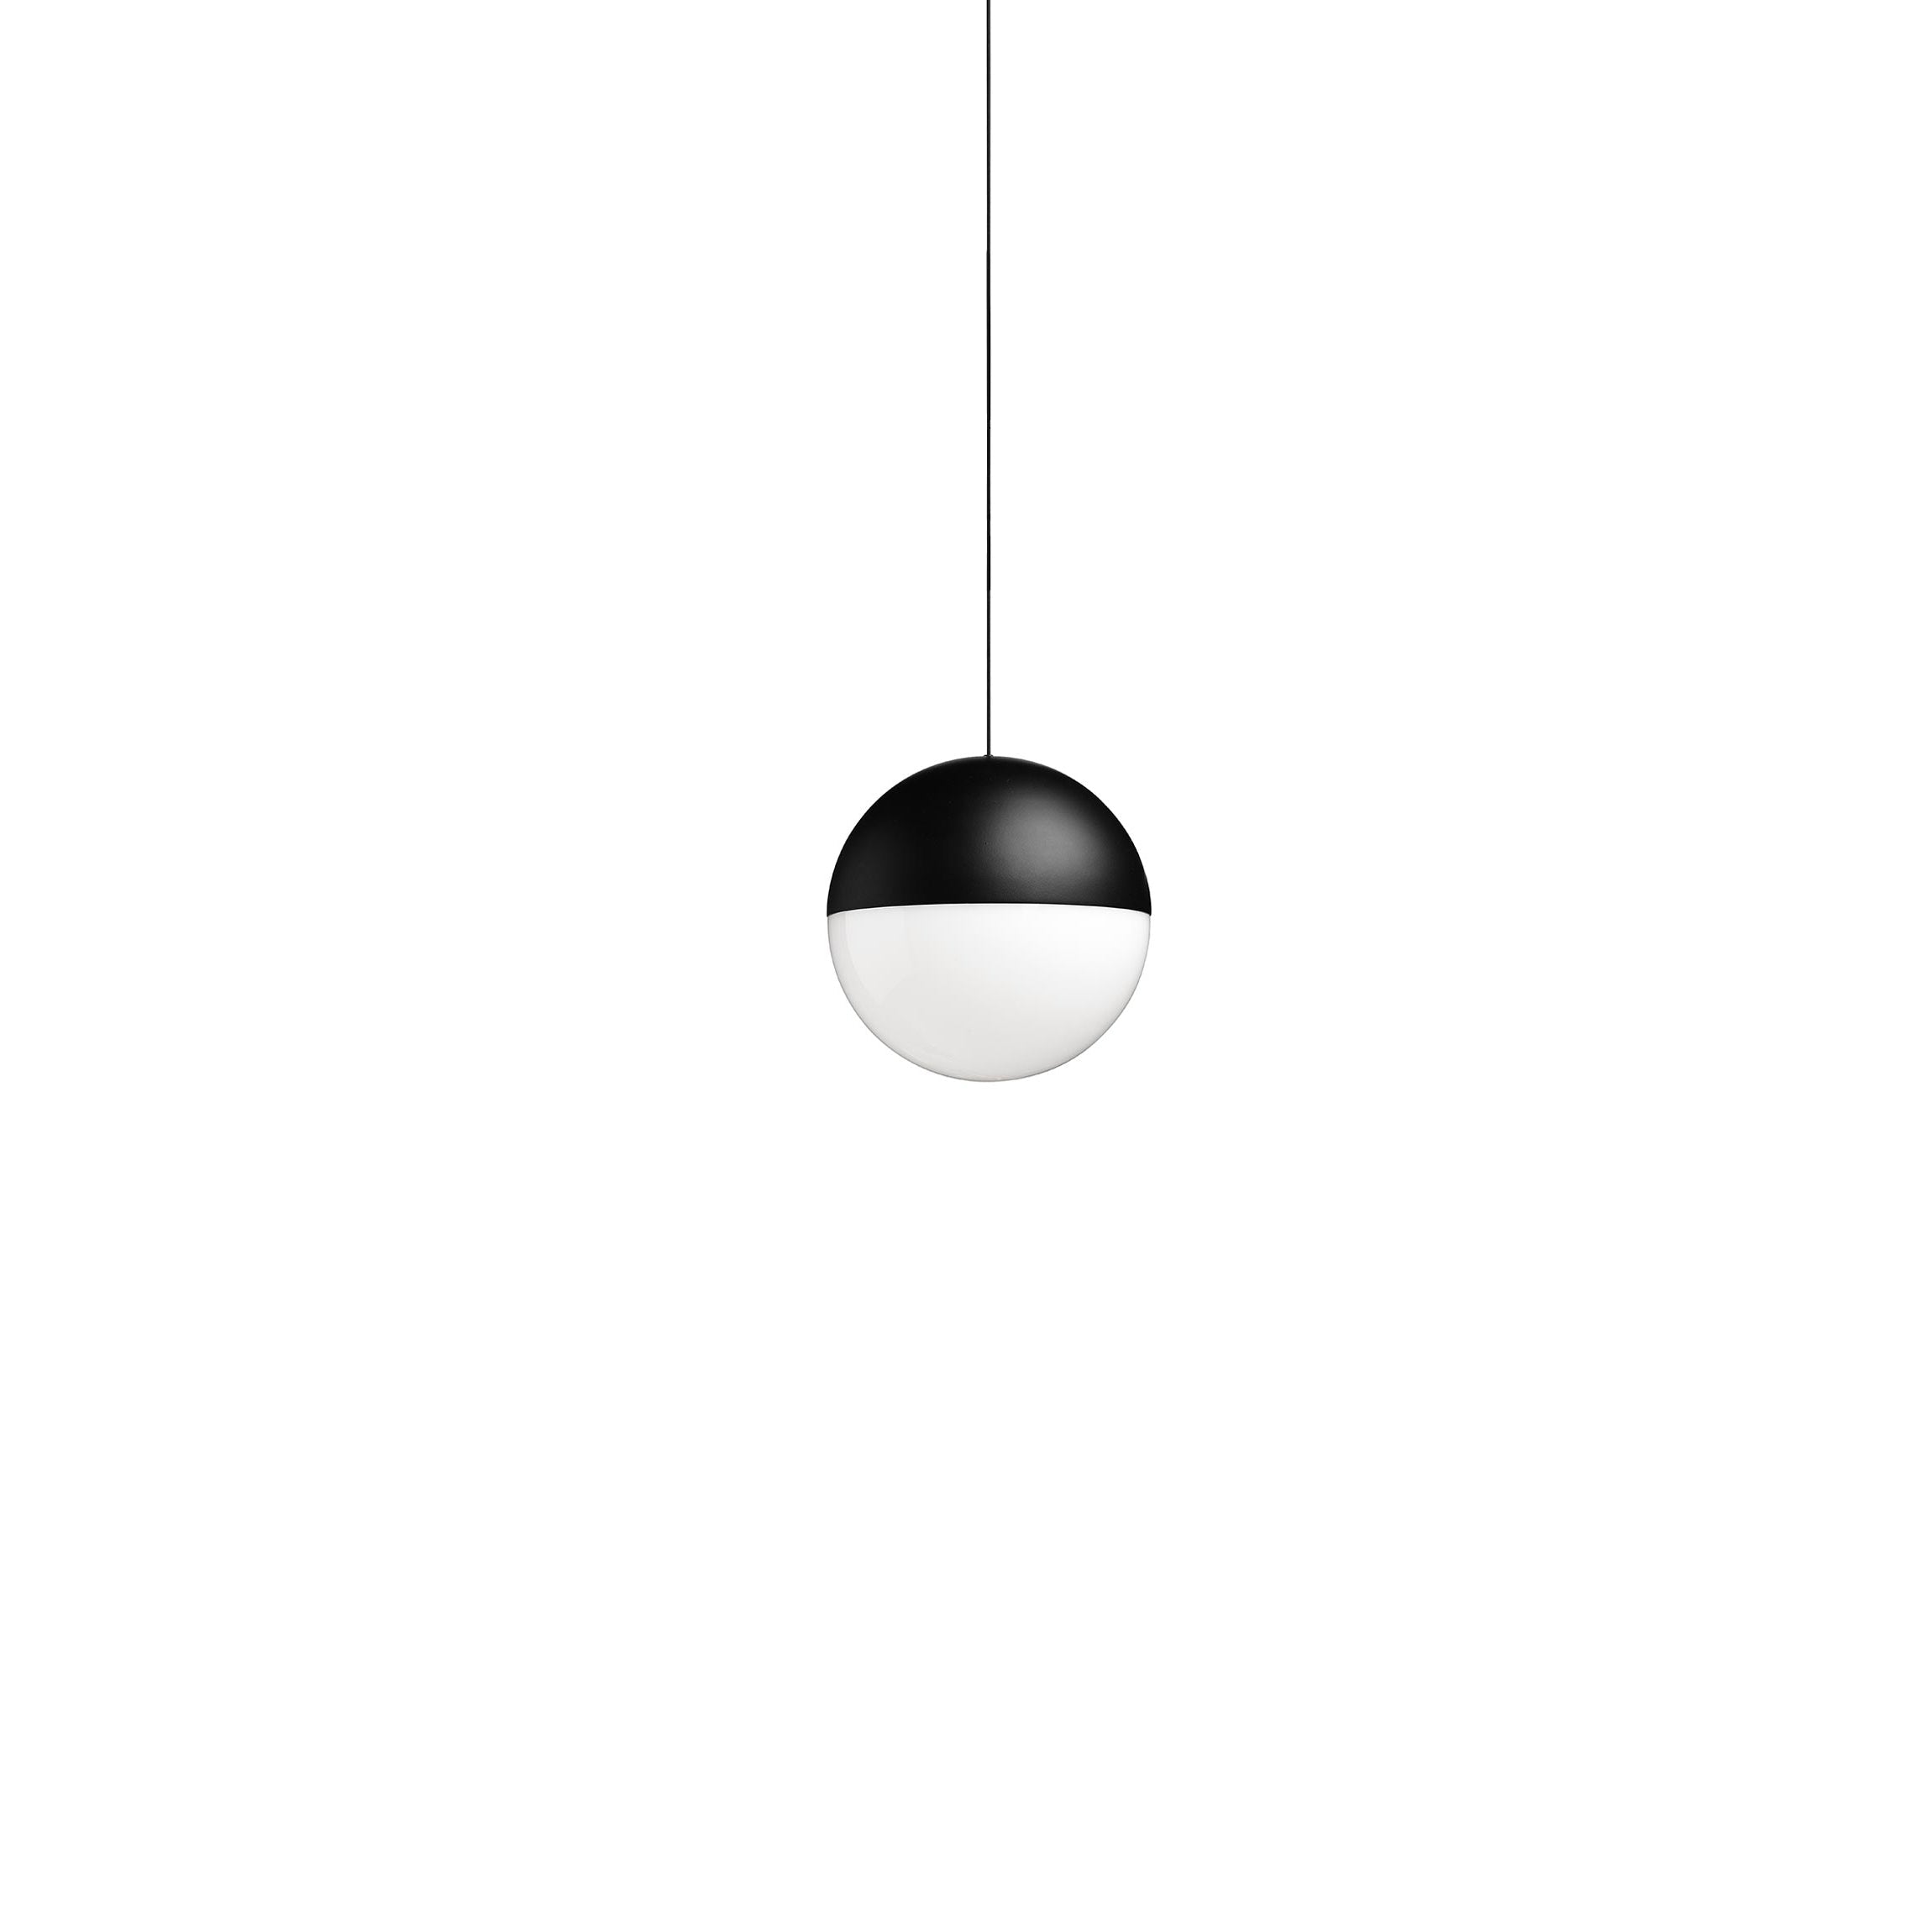 Flos String Light Ball Head吊灯22m黑色与App Casambi